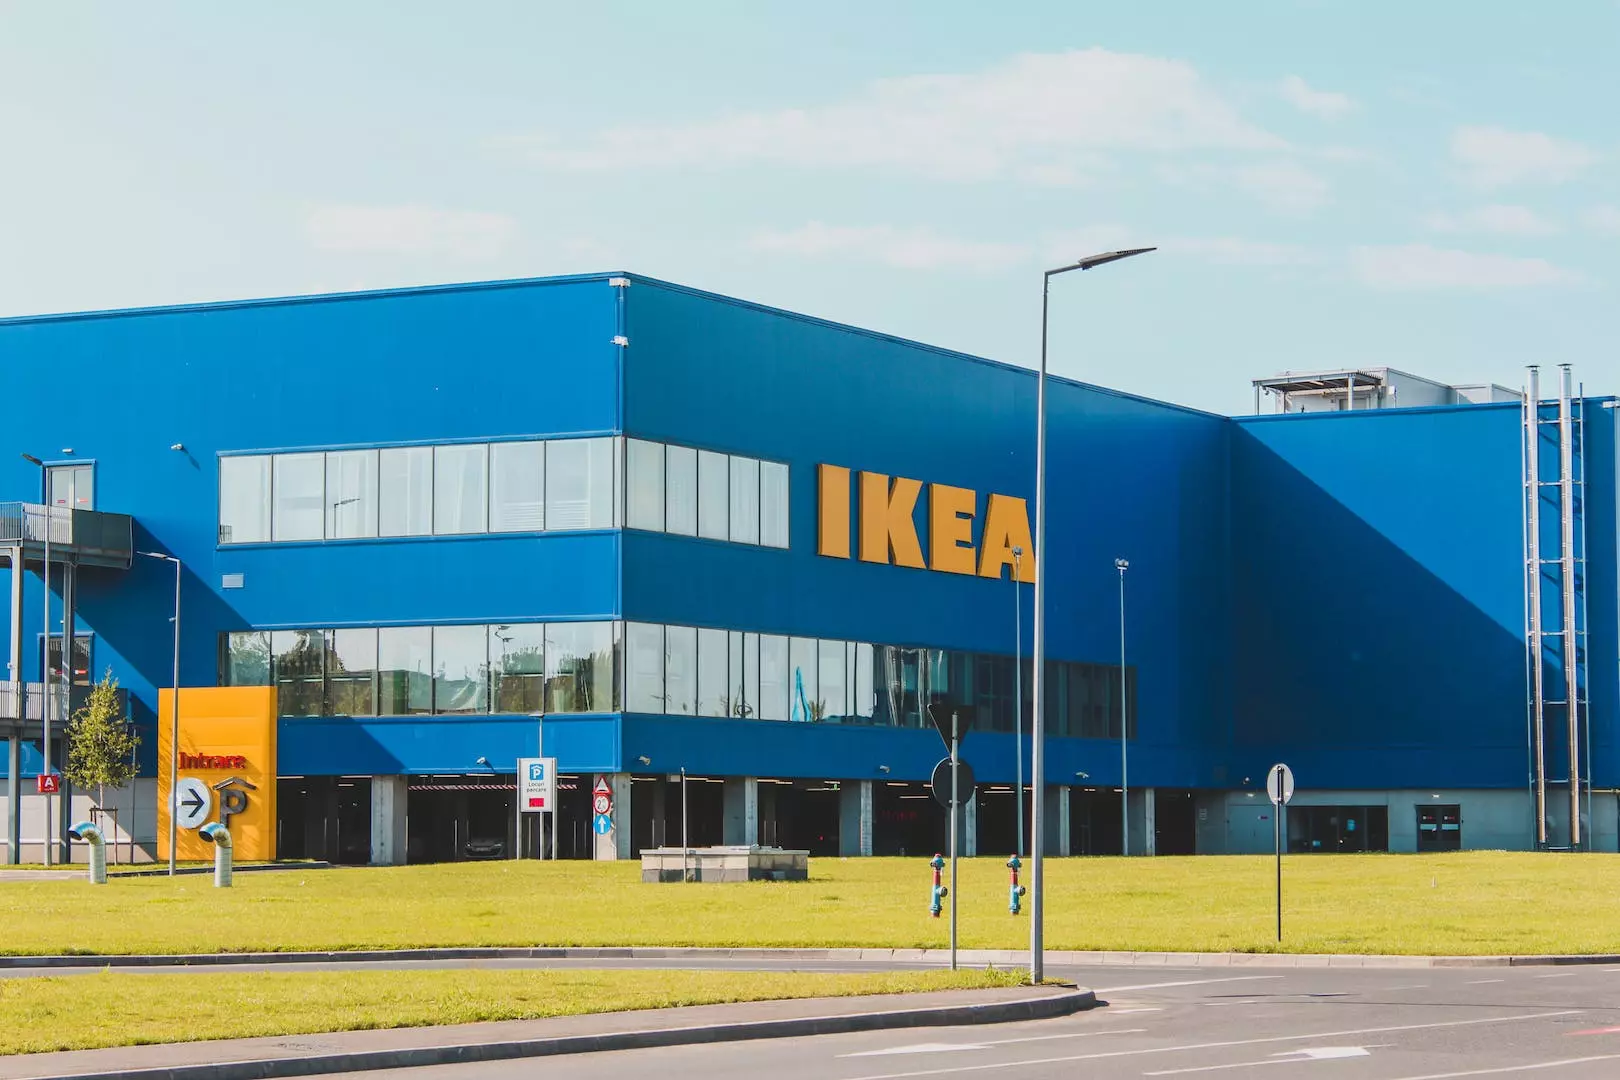 Ikea sommerjobb: En veiledning til å sikre sommerjobb hos IKEA